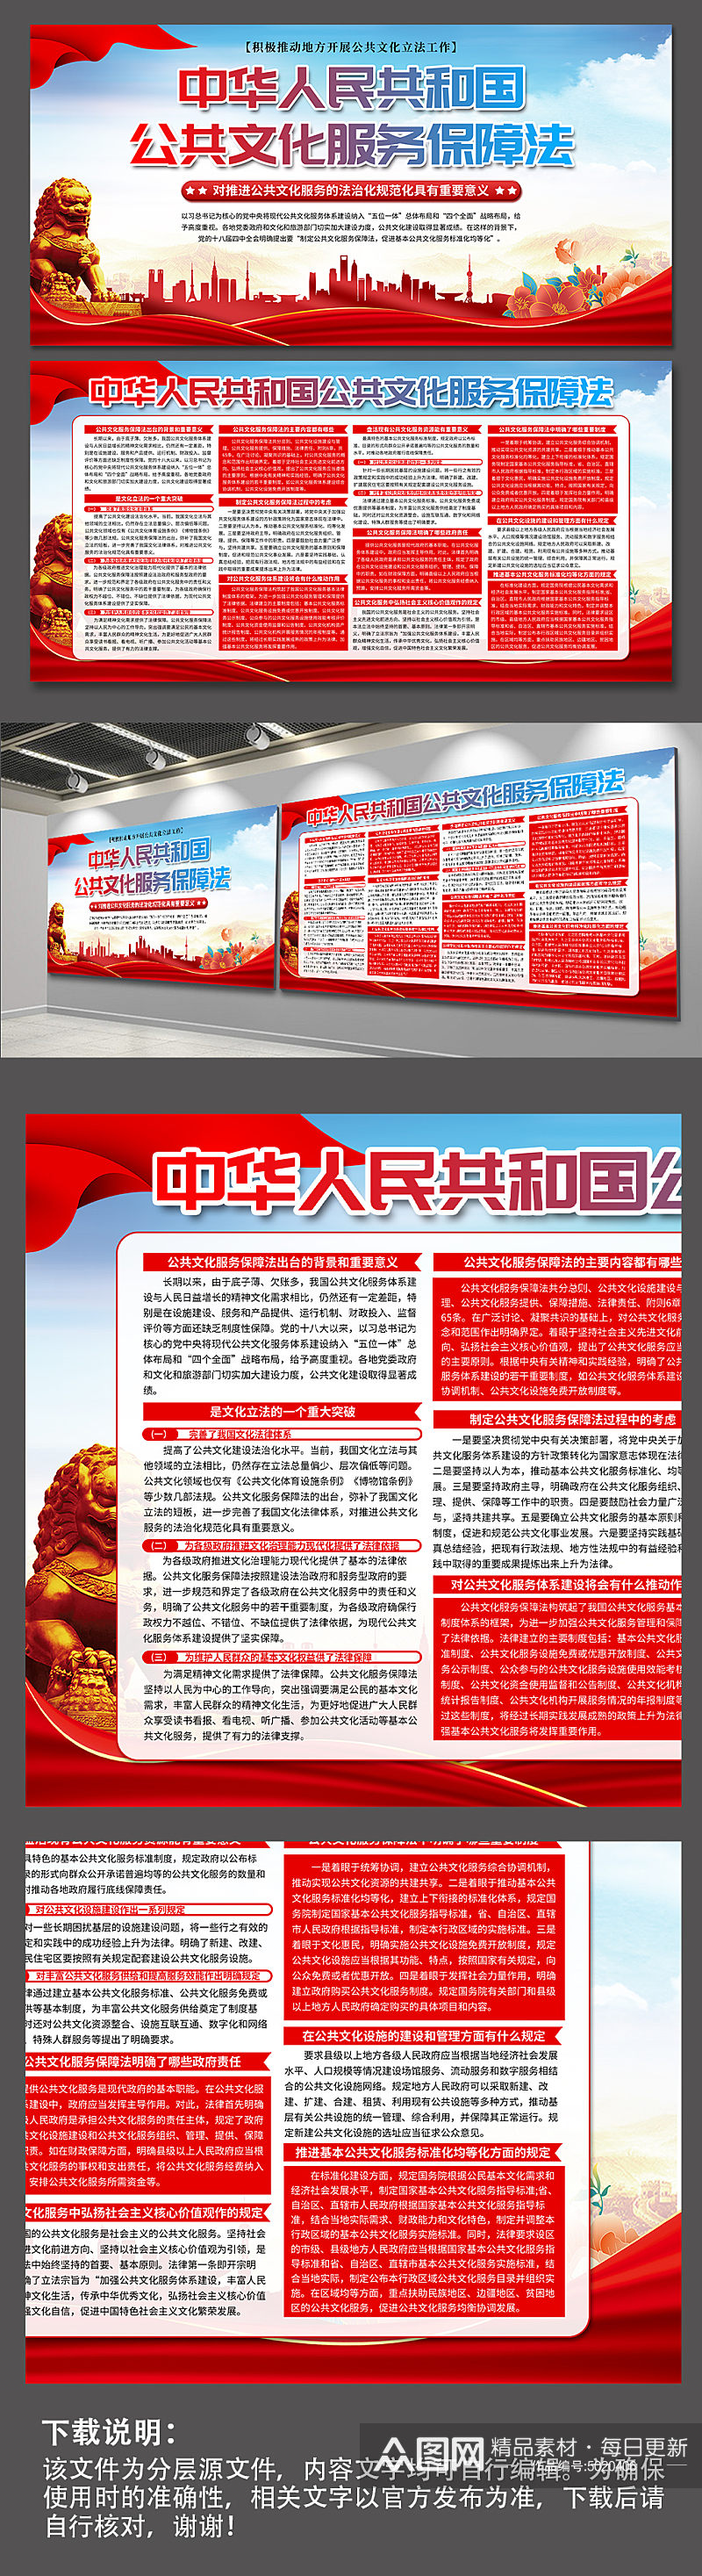 高档中华人民共和国公共文化服务保障法展板素材